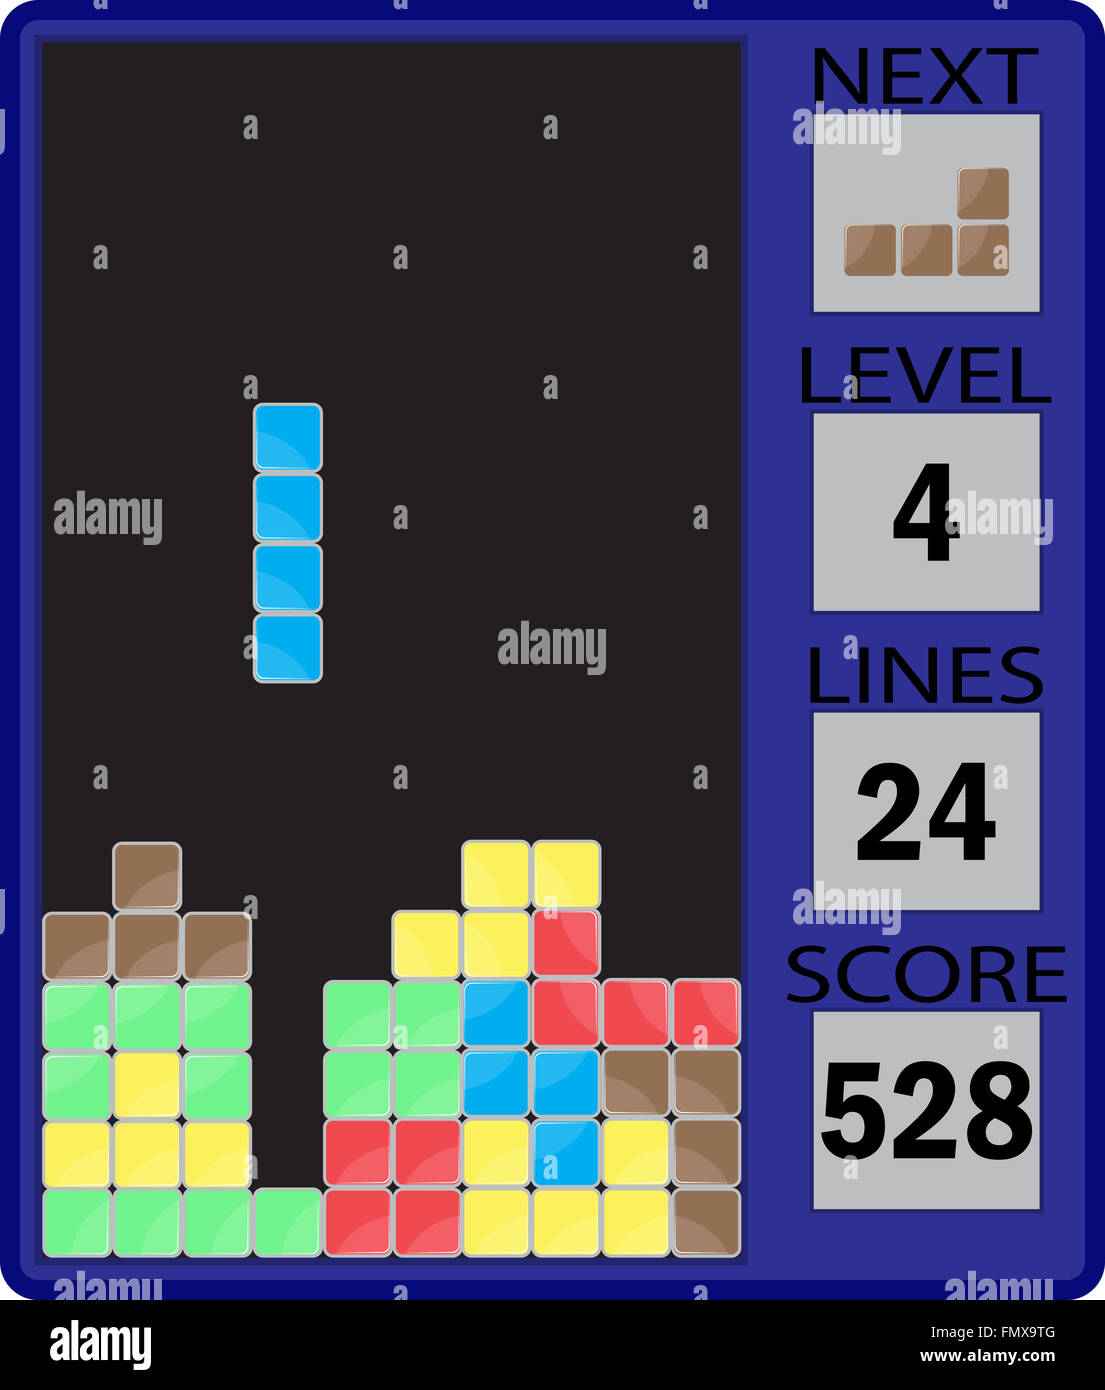 Jeu De Tetris Avec Des Bonbons à Guimauve Image stock - Image du activité,  situez: 132935931